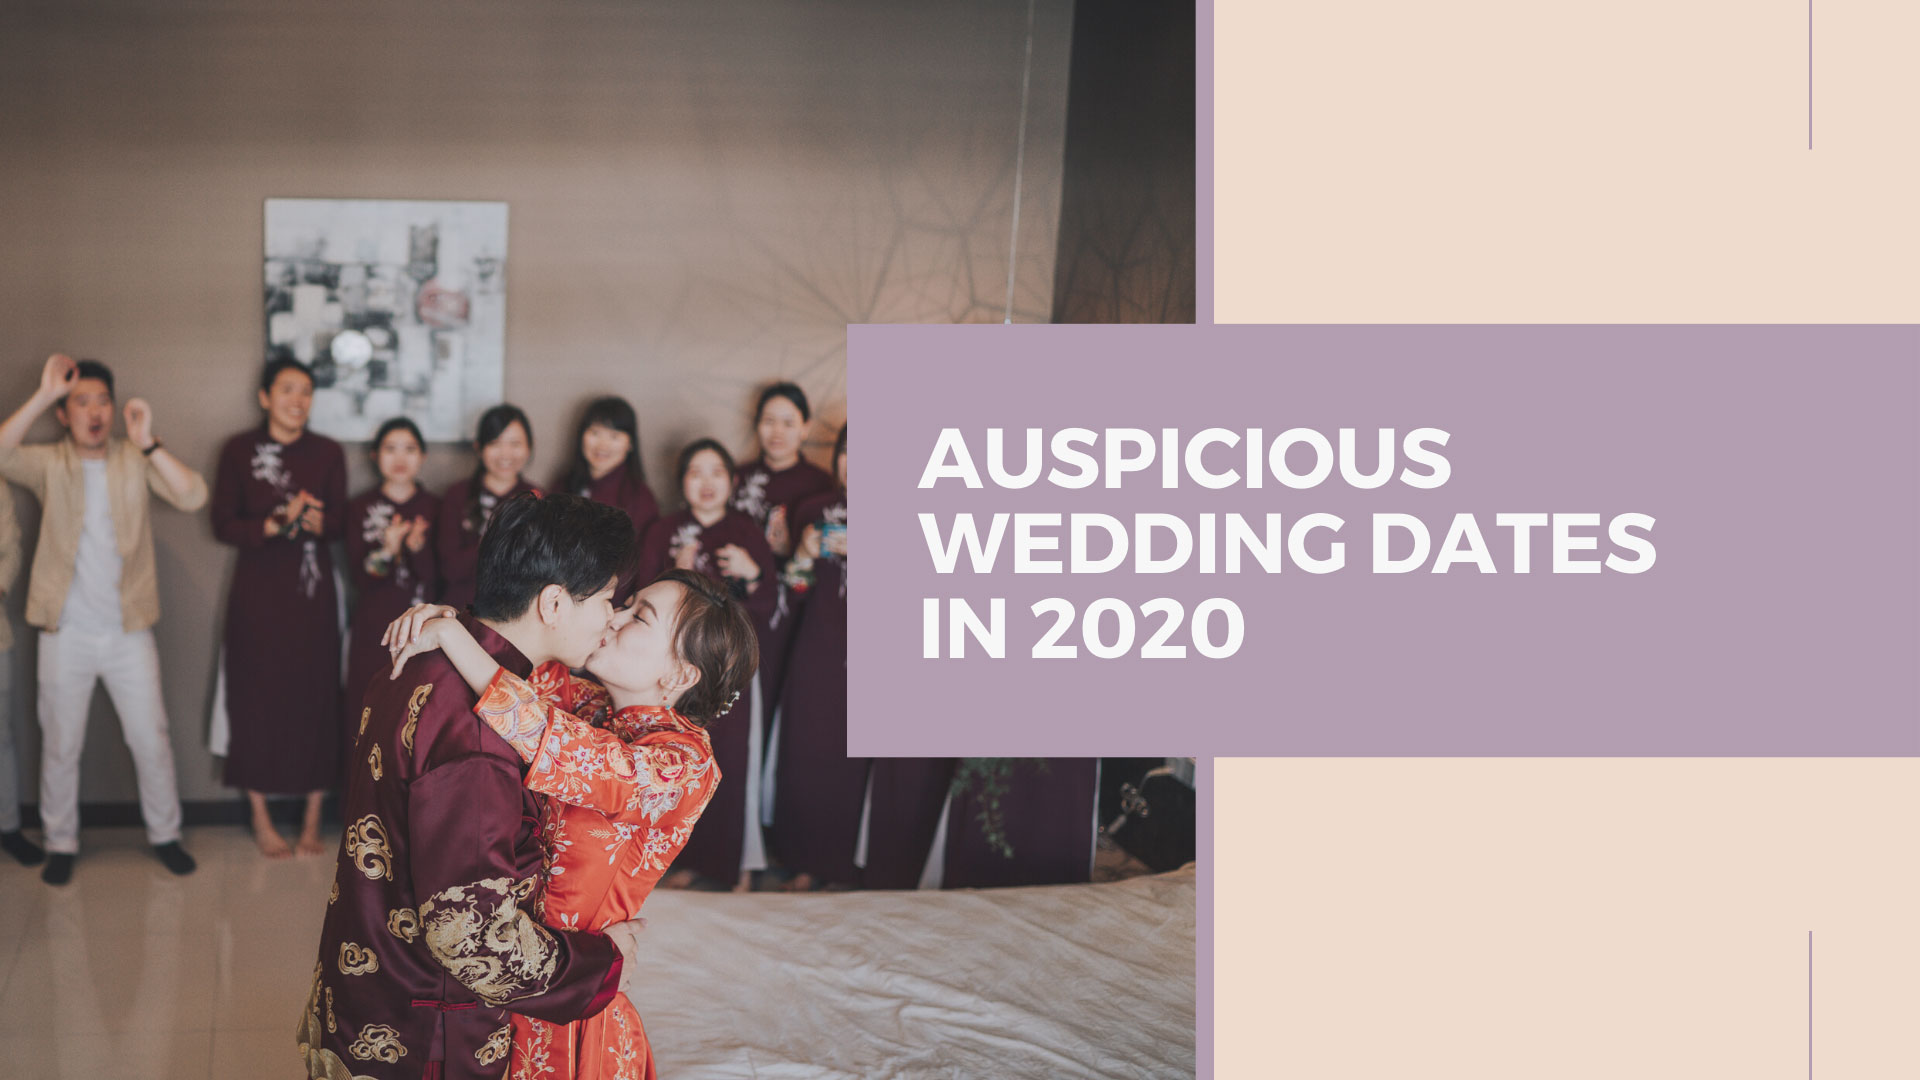 Auspicious wedding dates in 2020